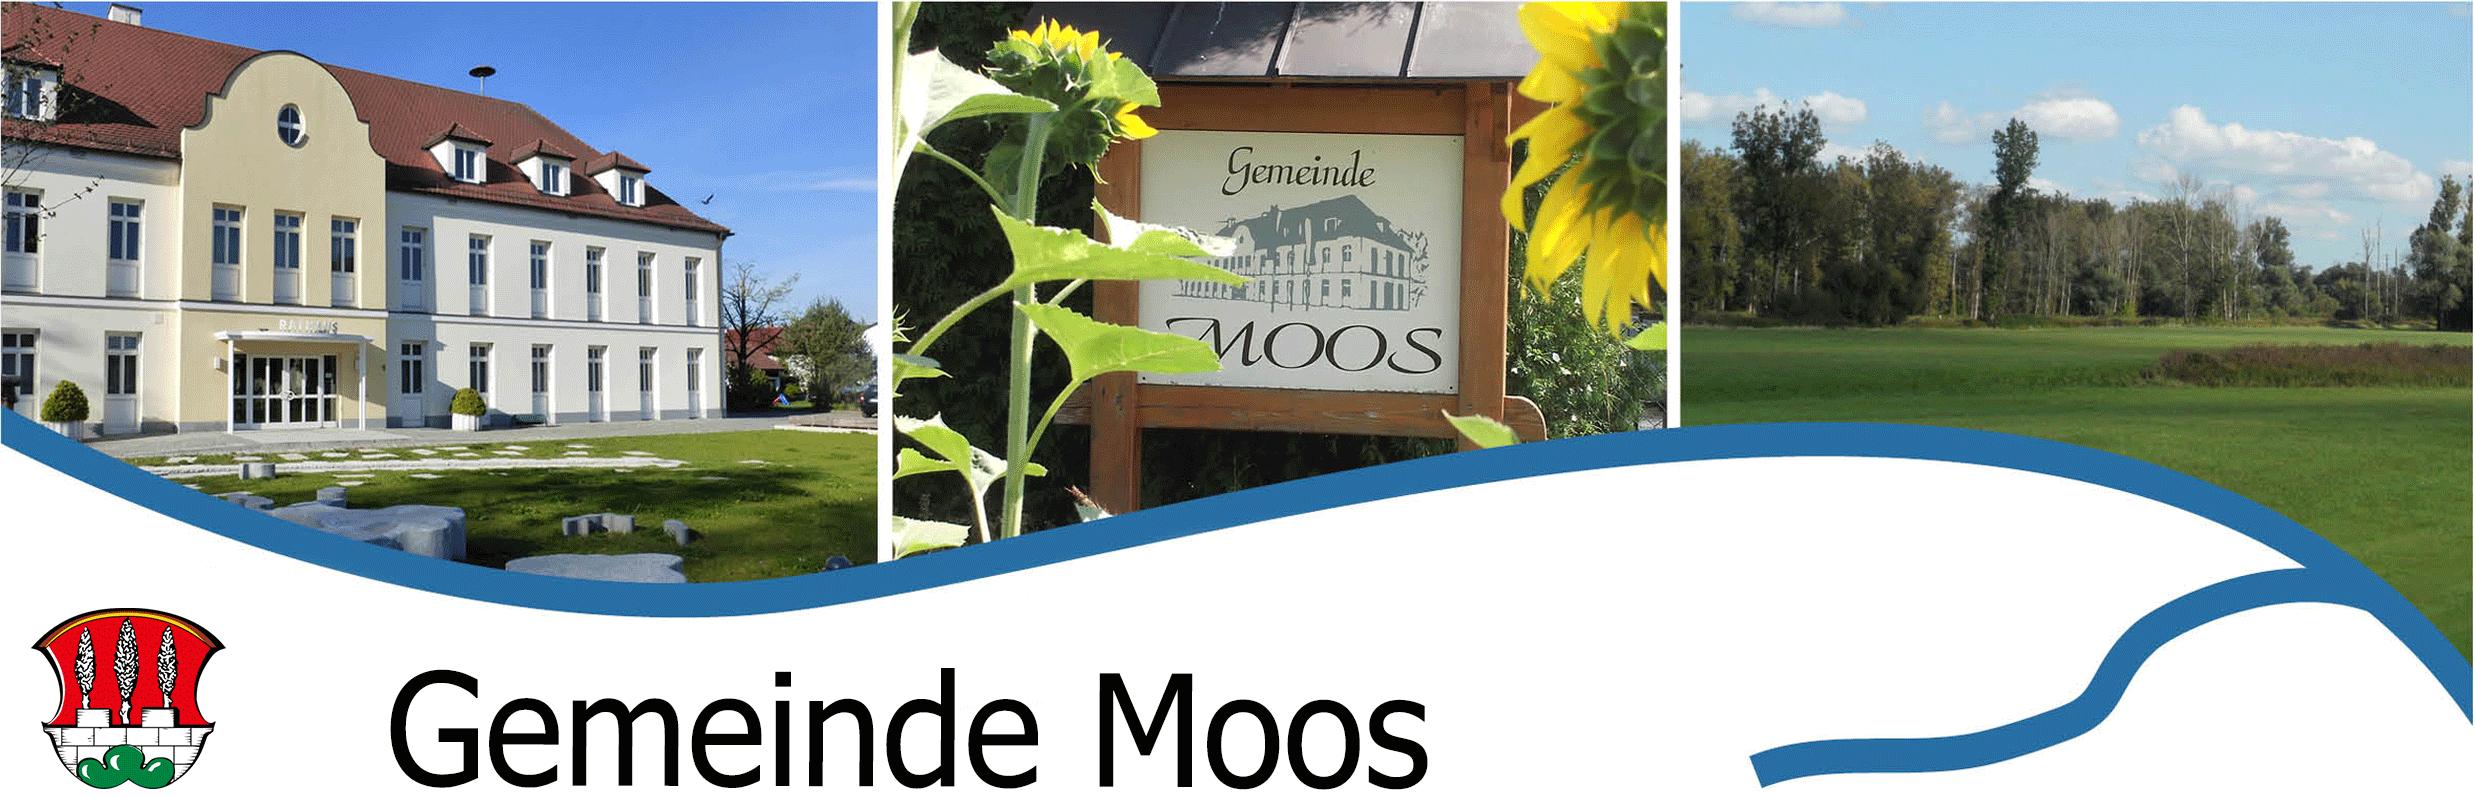 Gemeinde Moos